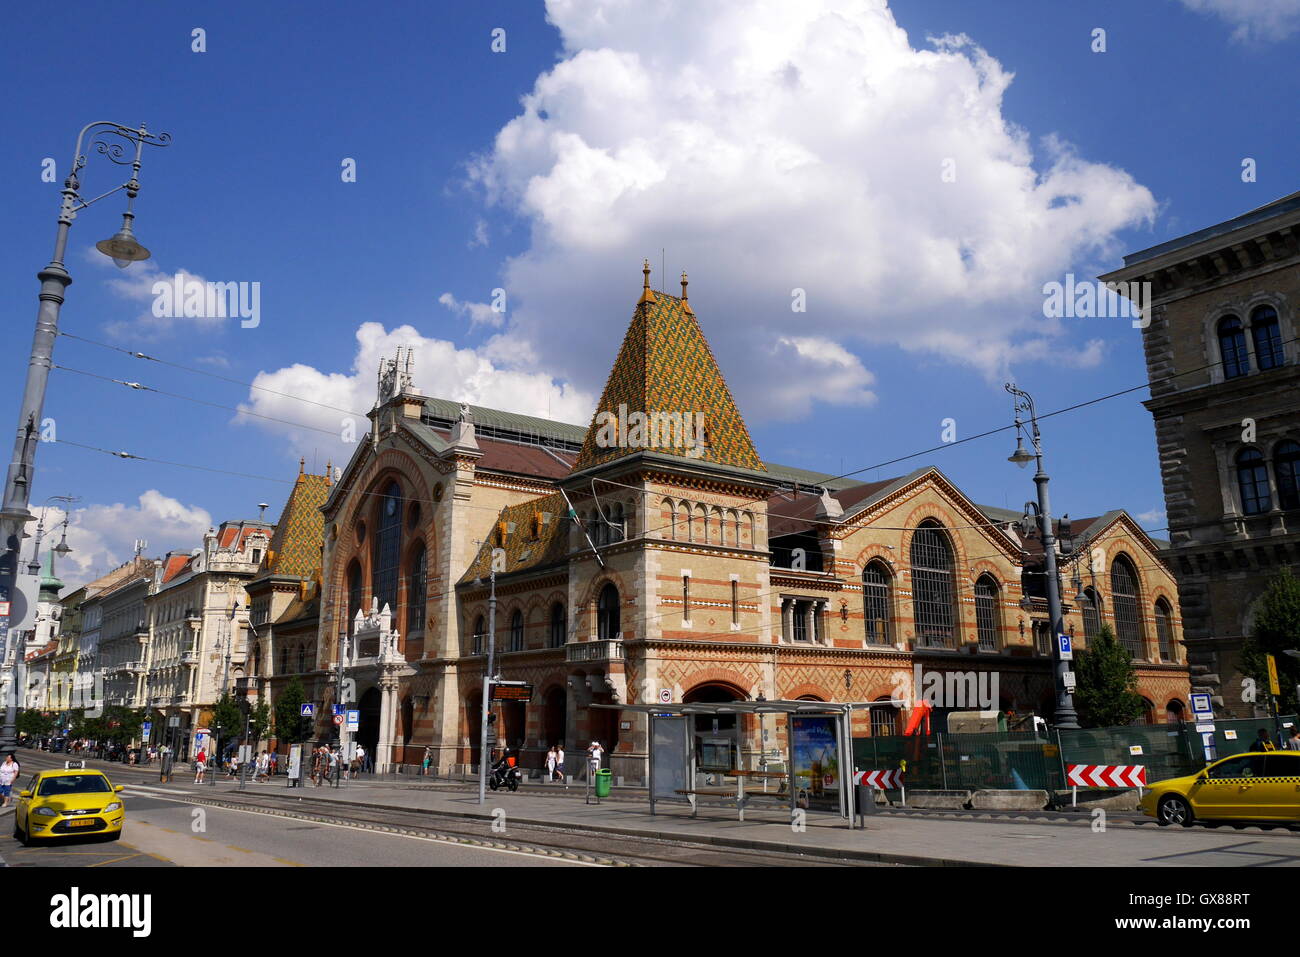 L'nagycsarnok, grand marché, Budapest, Hongrie Banque D'Images